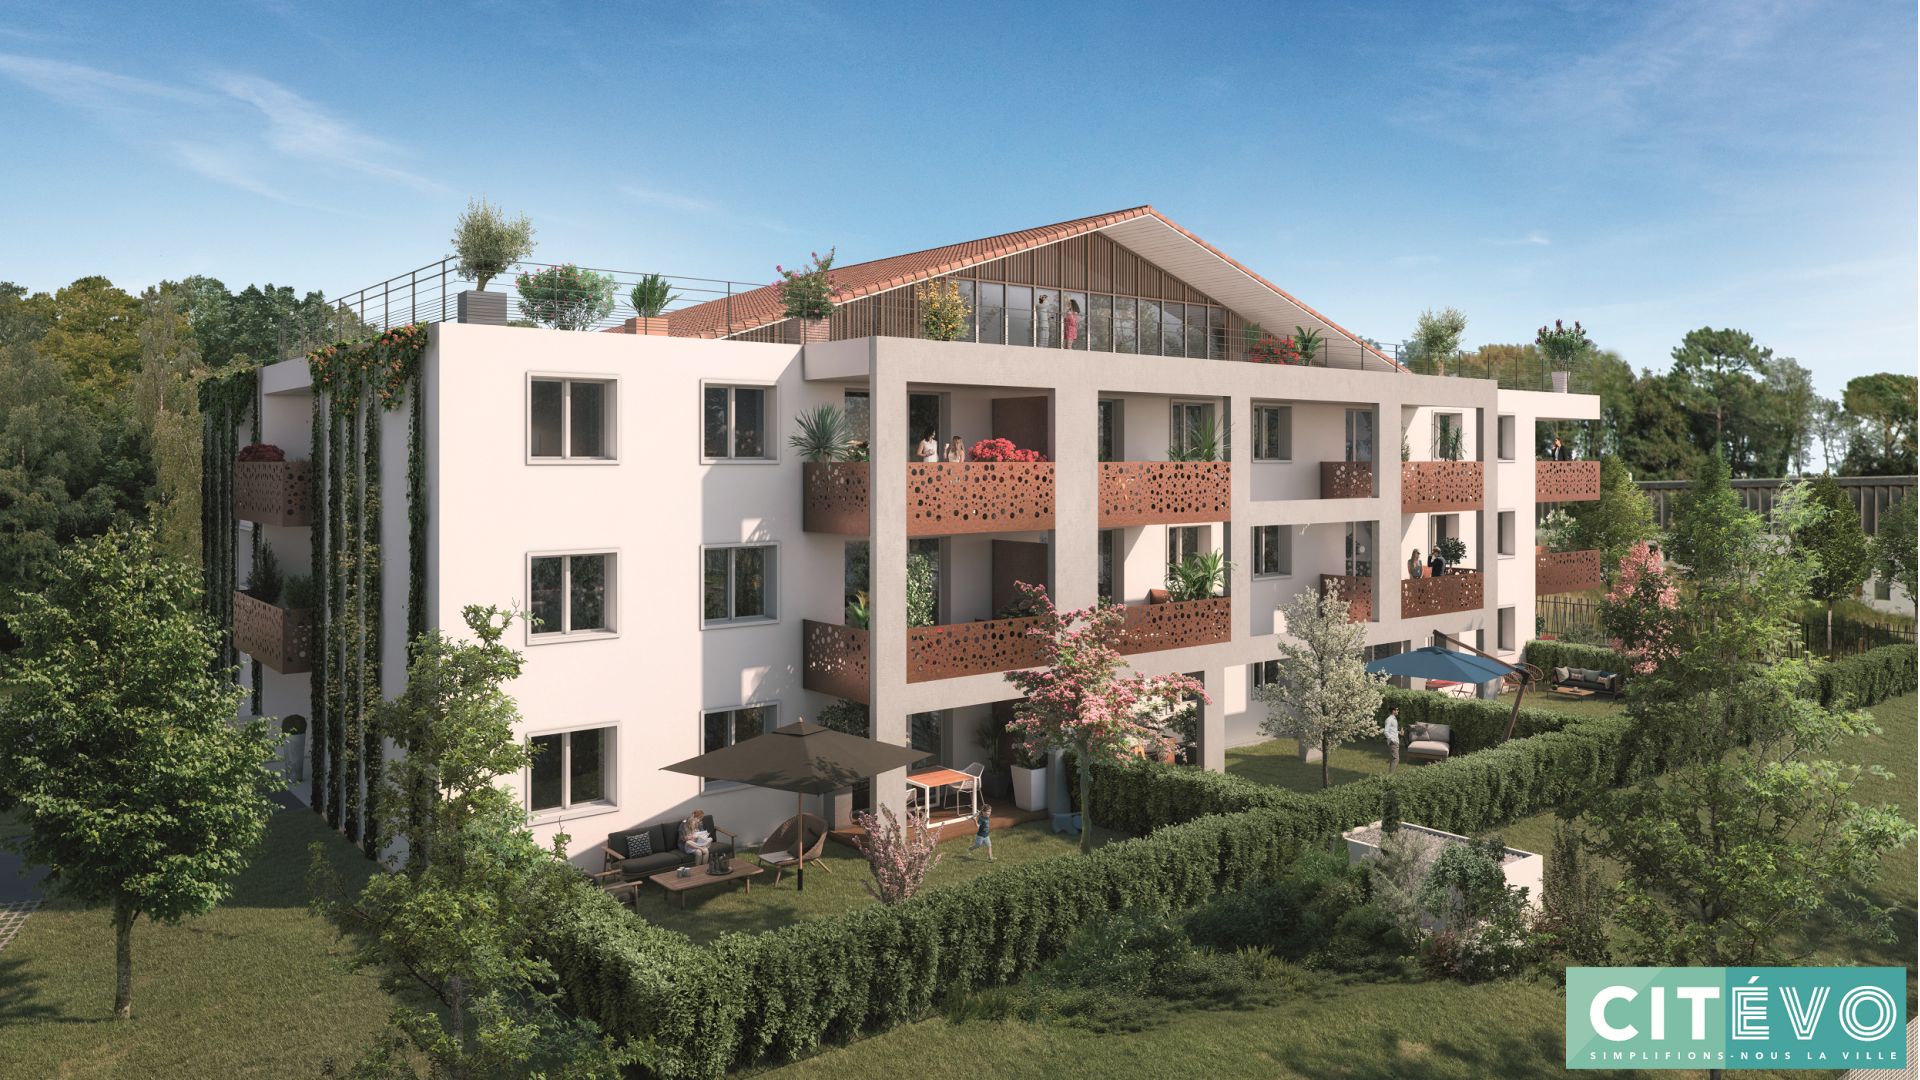 Greencity immobilier - achat appartements neufs du T2 au T5 - Résidence Les Terrasses de Piquessary - Boucau 64340